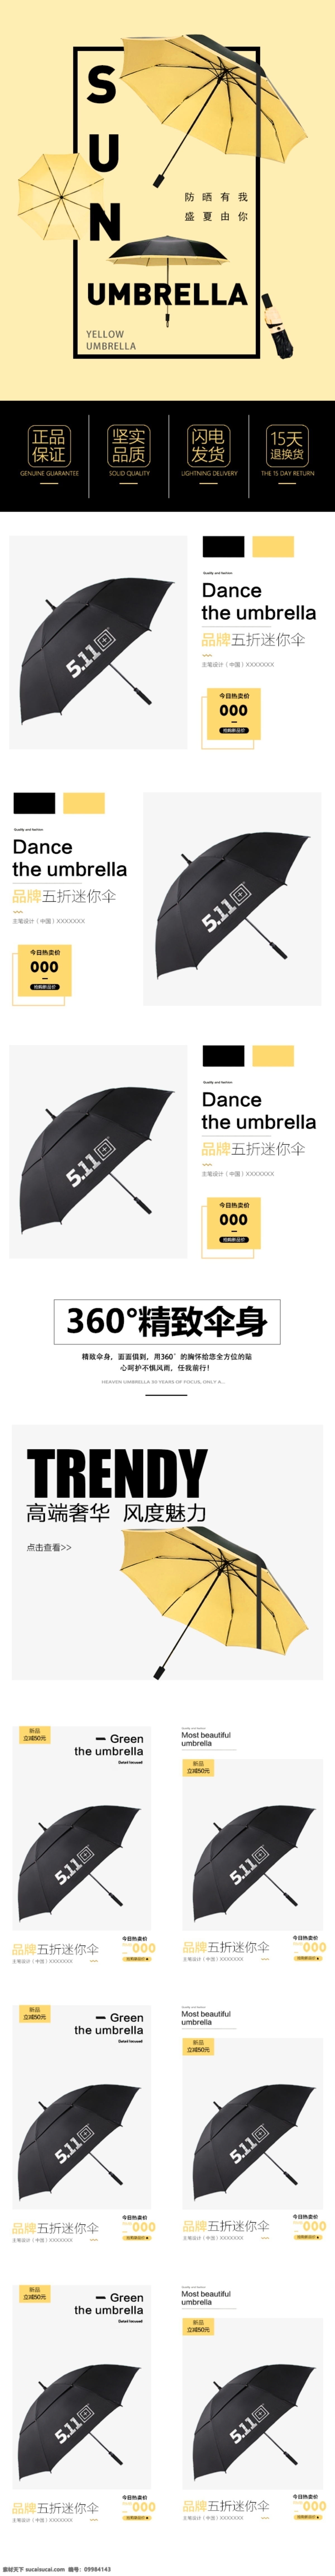 家居用品 雨伞 手机 首页 简洁时尚 手机首页 电商淘宝